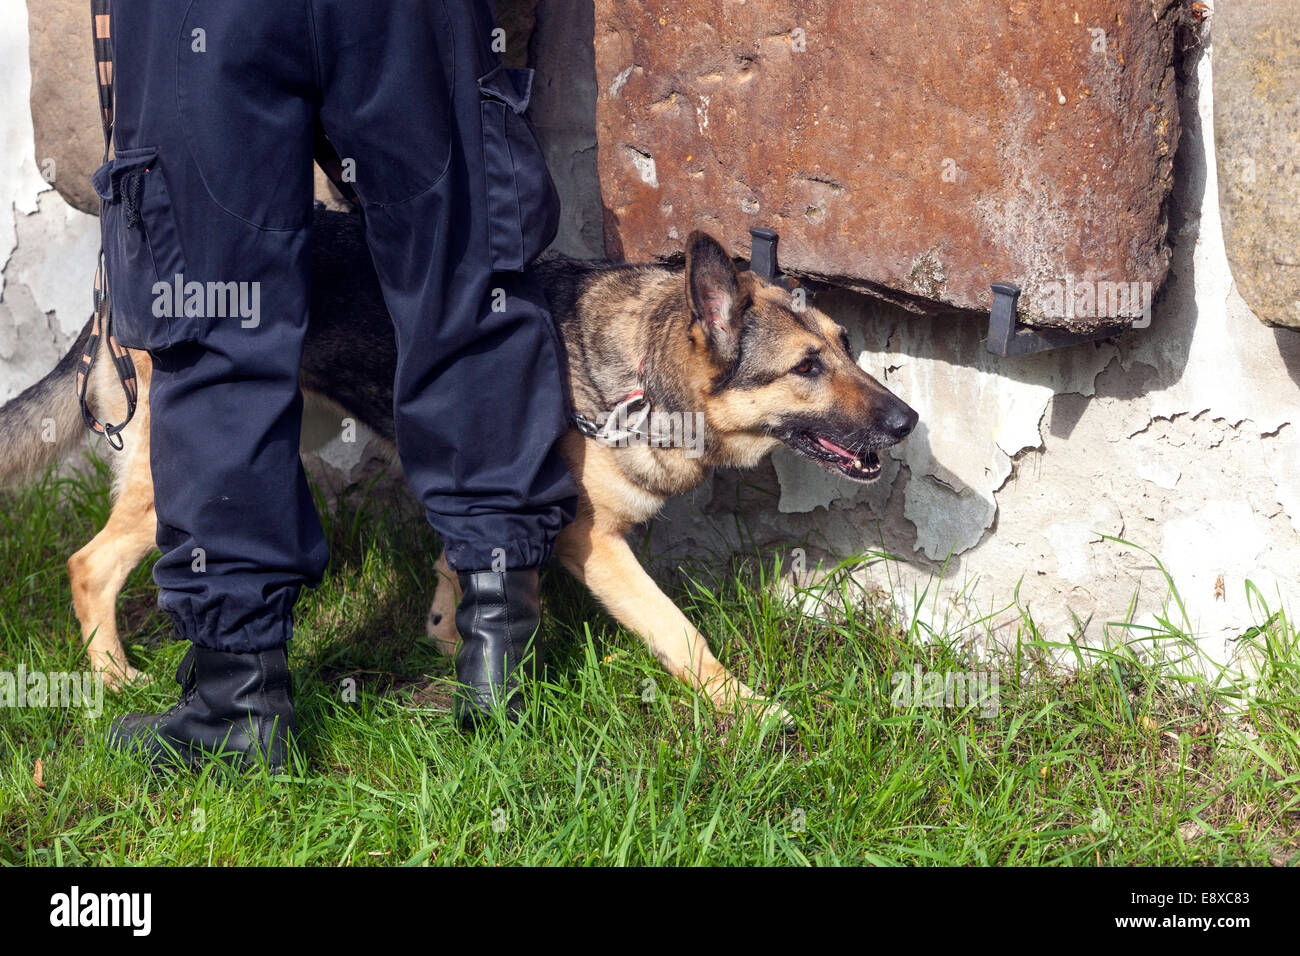 Ricerca di cani di polizia esplosivi, Un pastore tedesco ispeziona un oggetto, cane polizia cecchino esplosivi uomo e cane Foto Stock